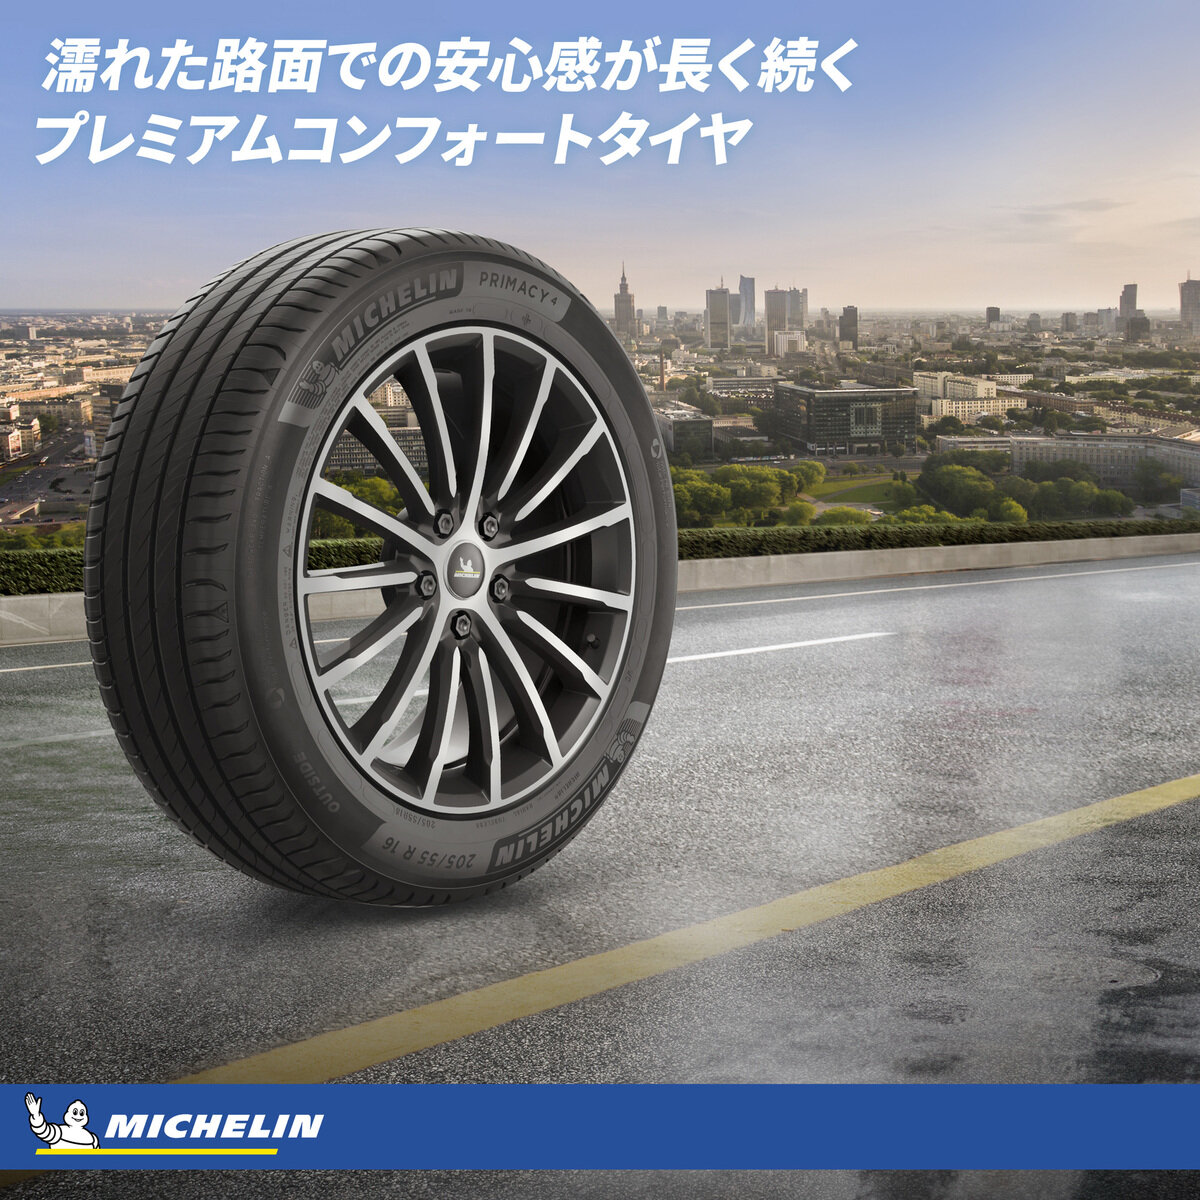 Michelin 225/60 R17 99V TL PRIMACY 4+ MI | Costco Japan